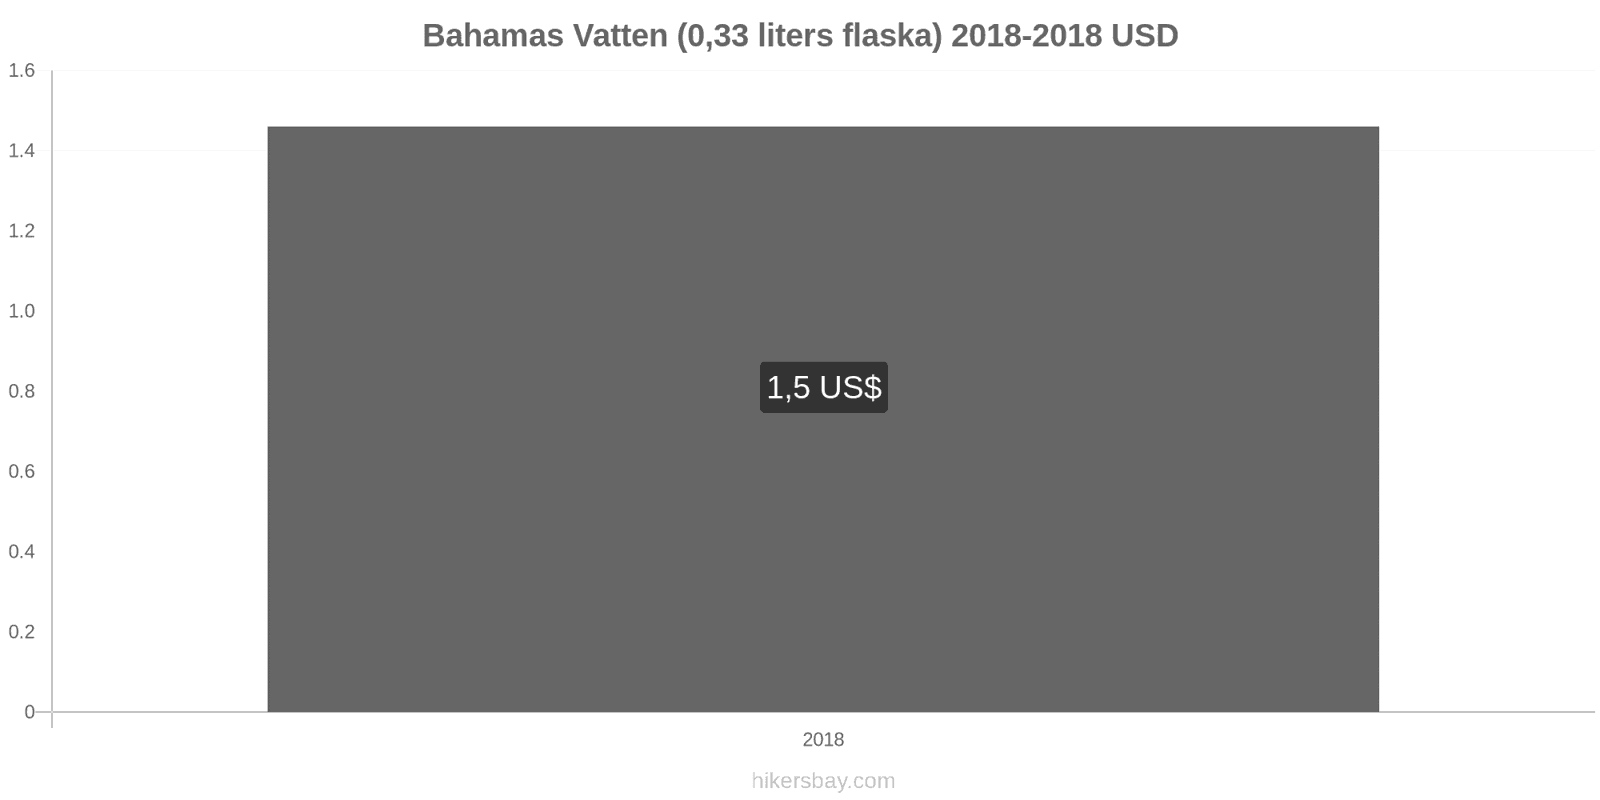 Bahamas prisändringar Vatten (0.33 liters flaska) hikersbay.com